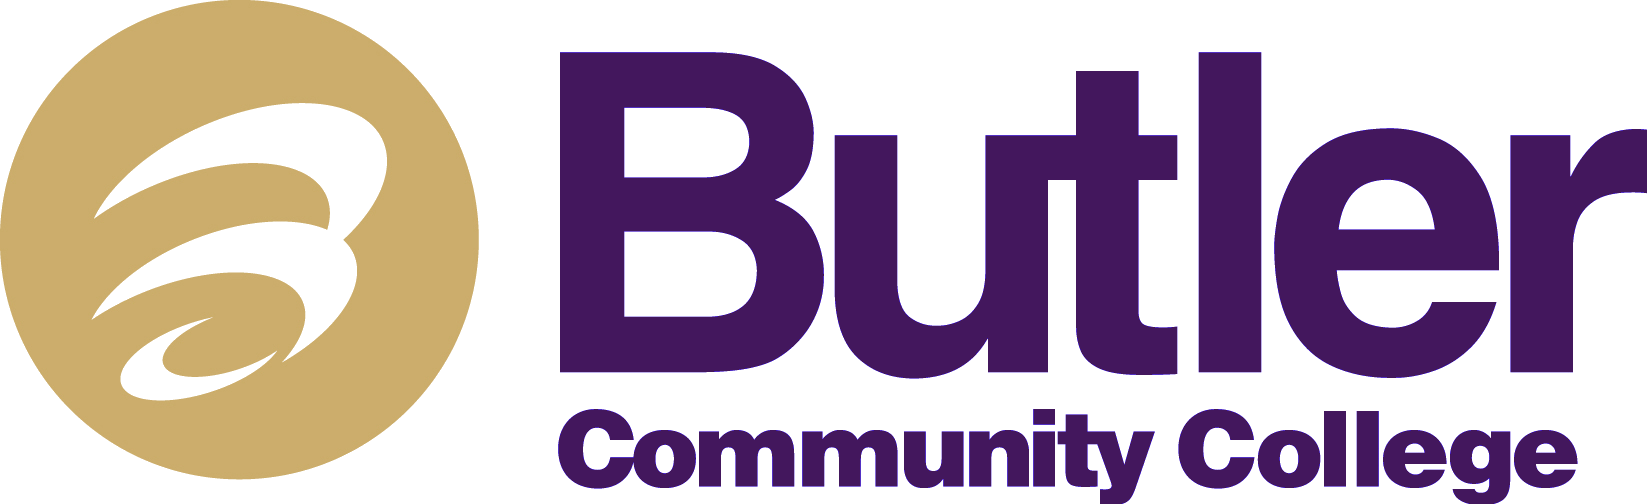 Butler_CC_logo